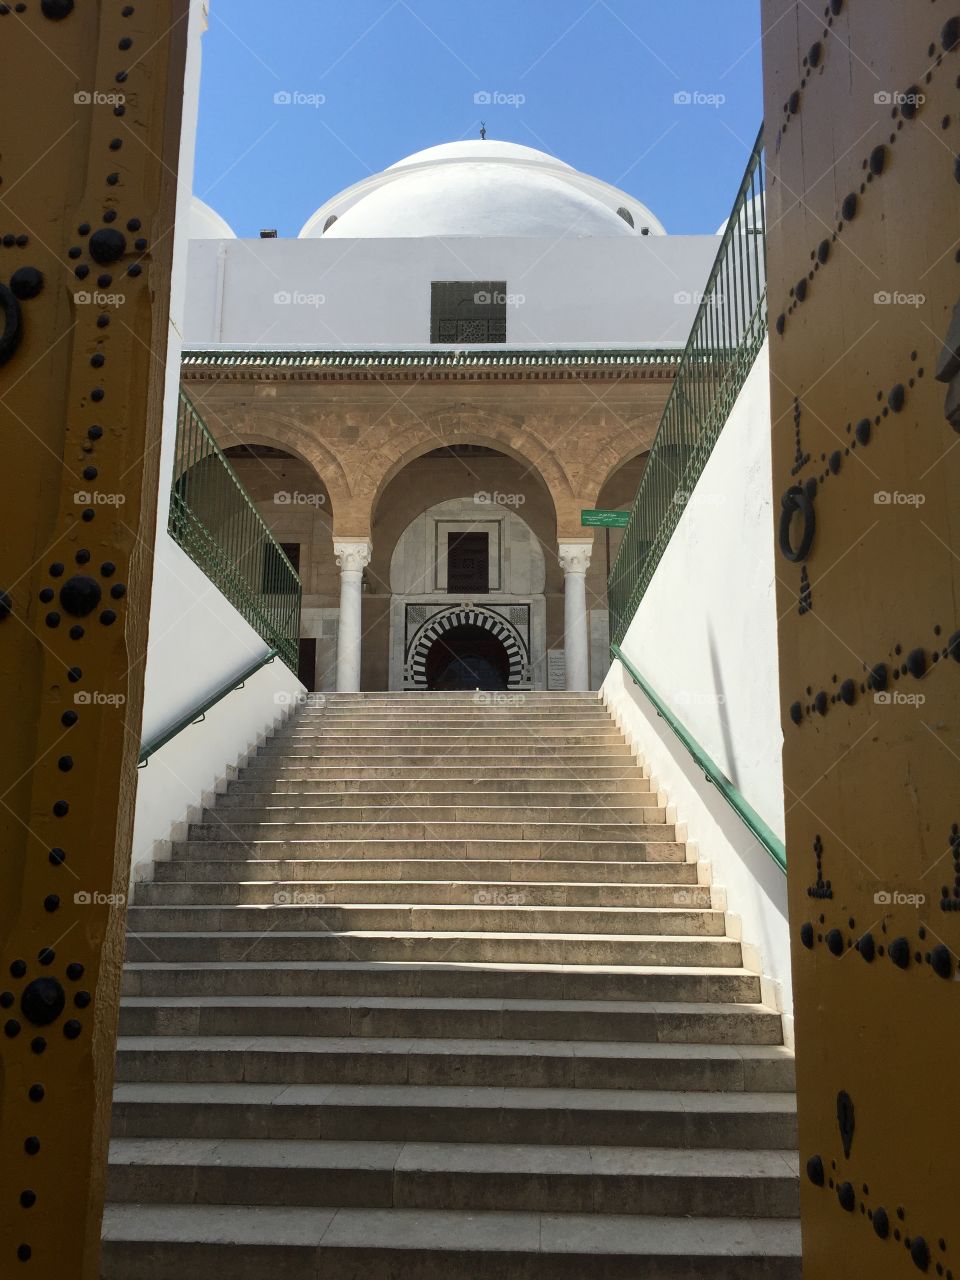 mosquée tunis